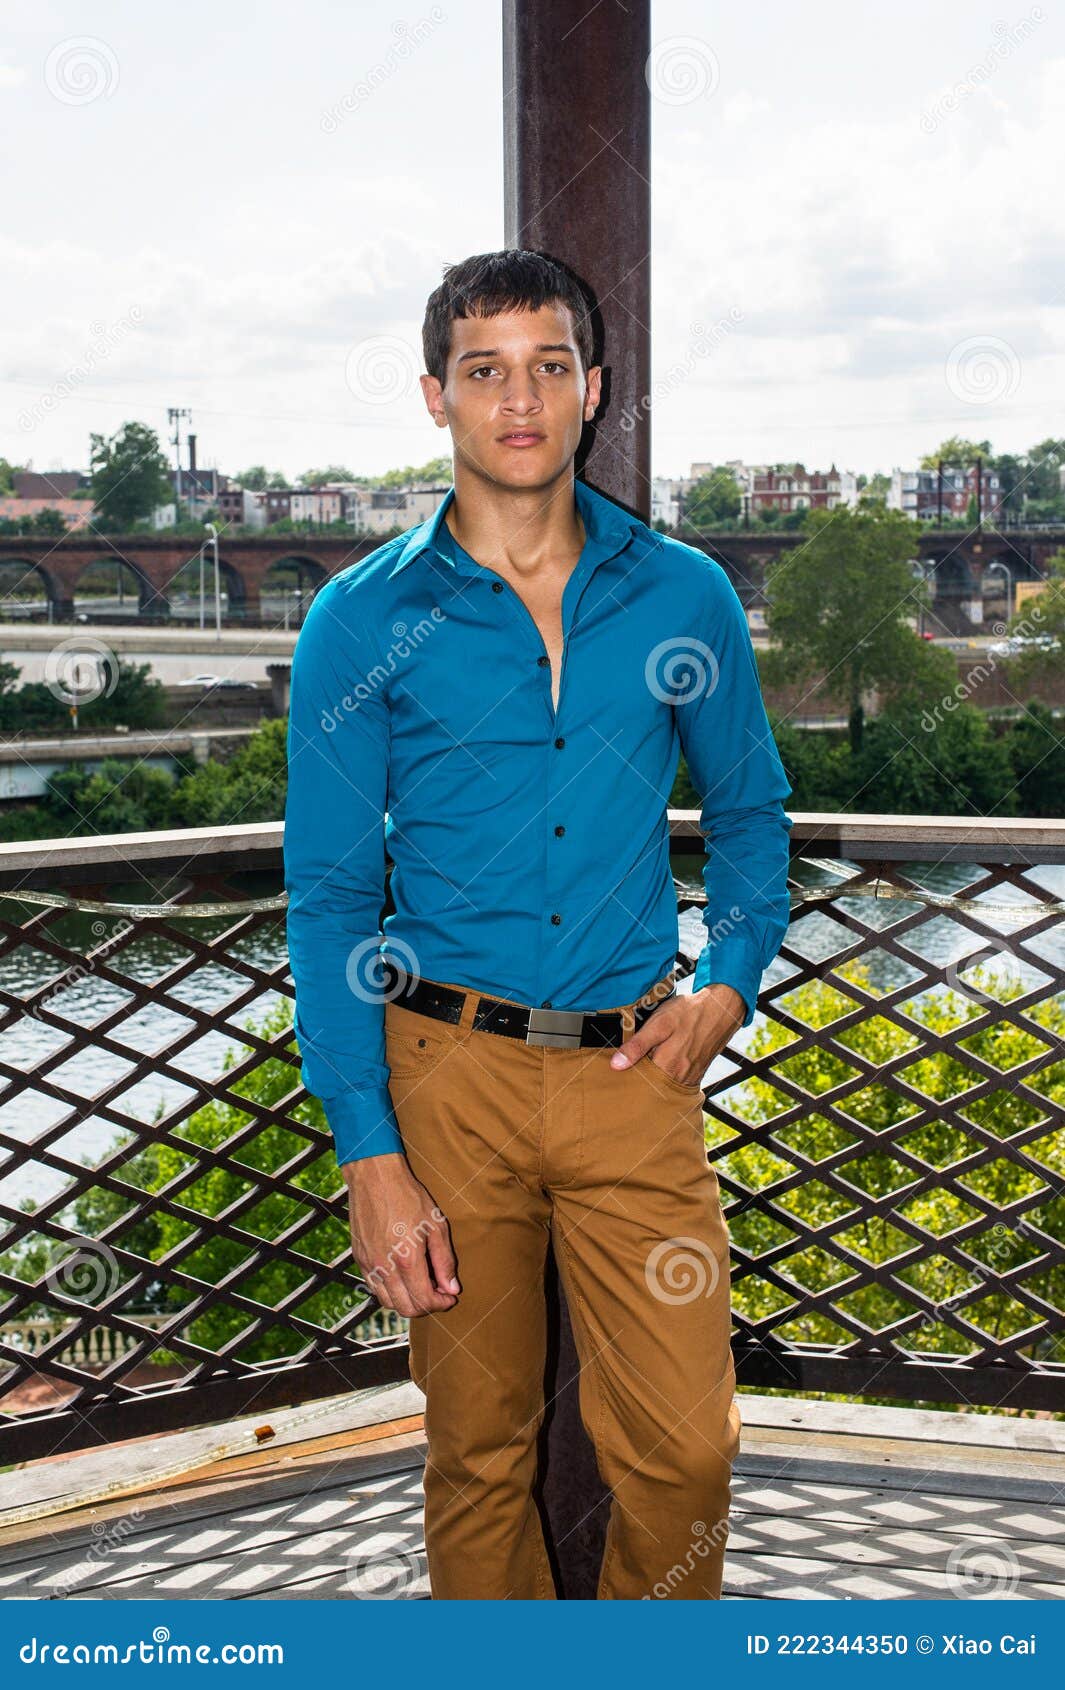 Blue Shirt Matching Pant for Men to Look Dashing